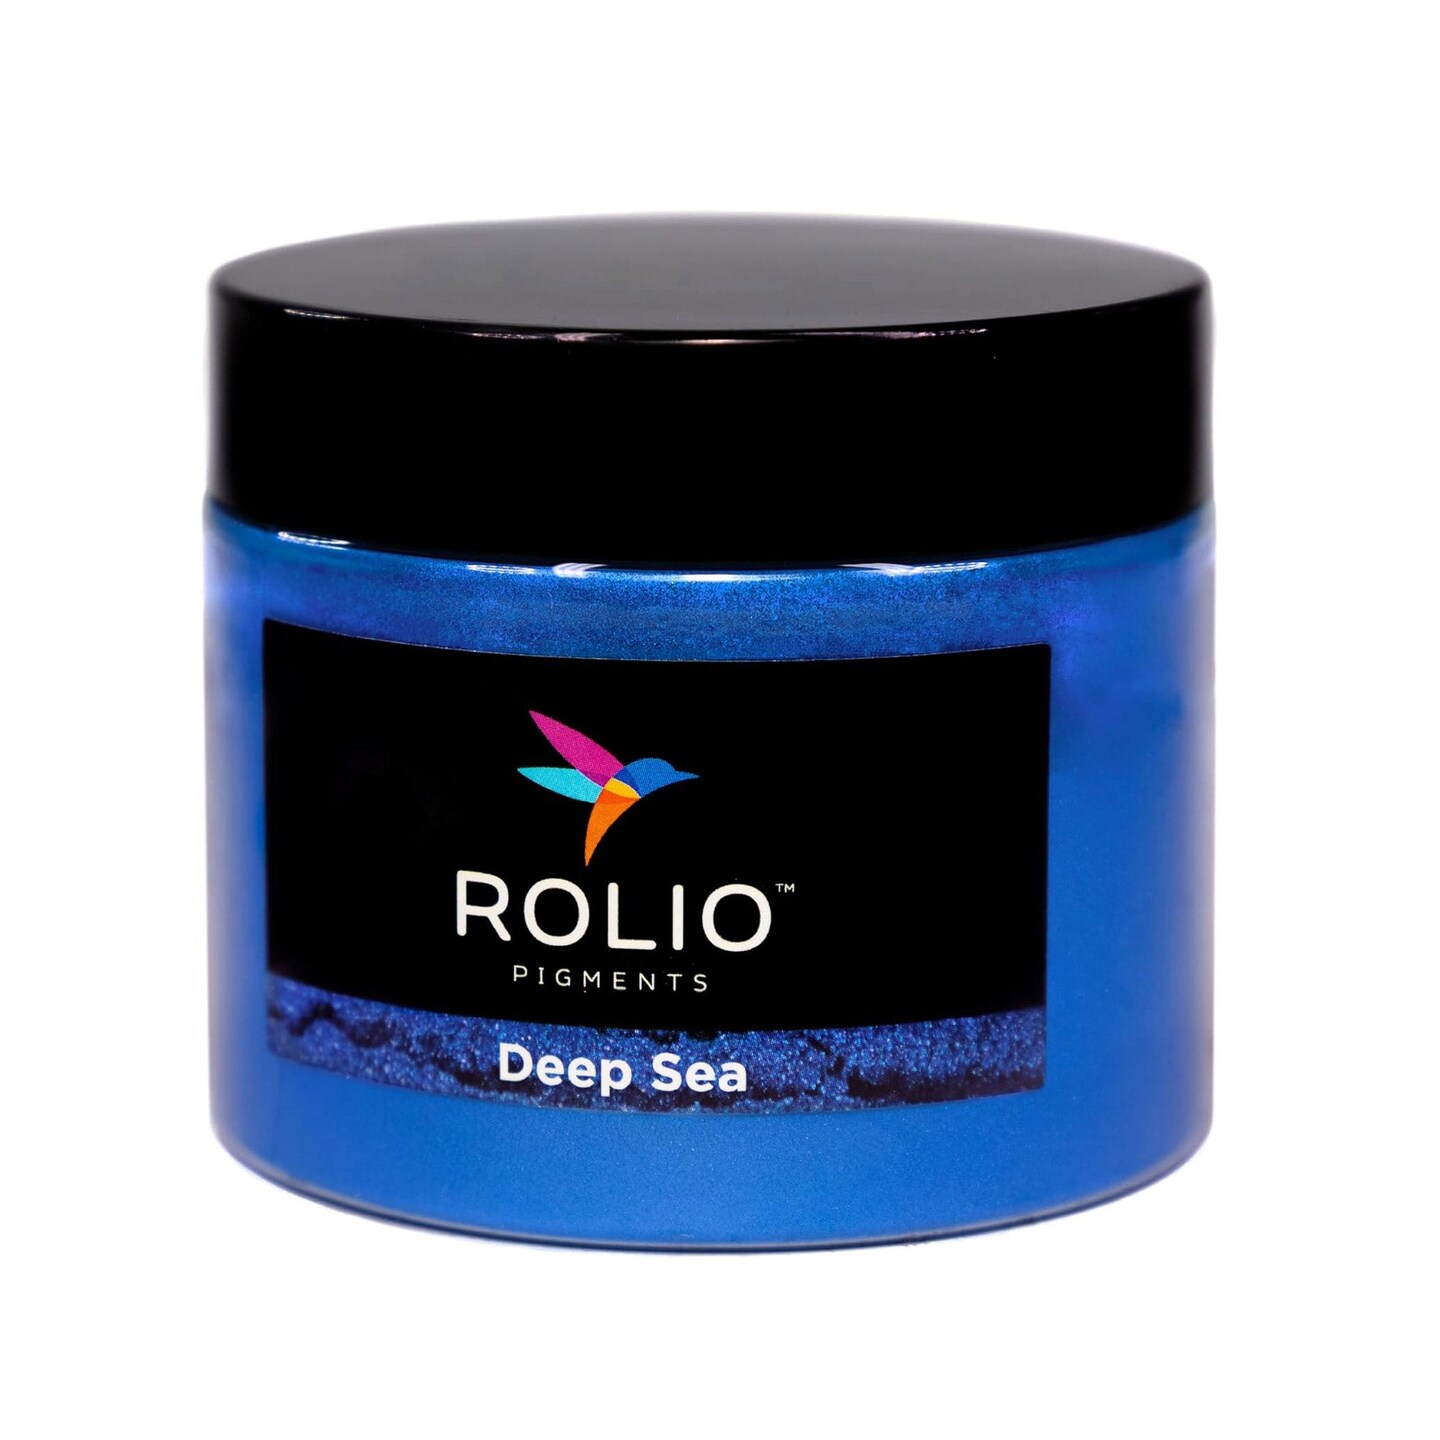 Rolio - 1 Jar Mica Powder (Deep Sea) - 50g / 1.8 oz